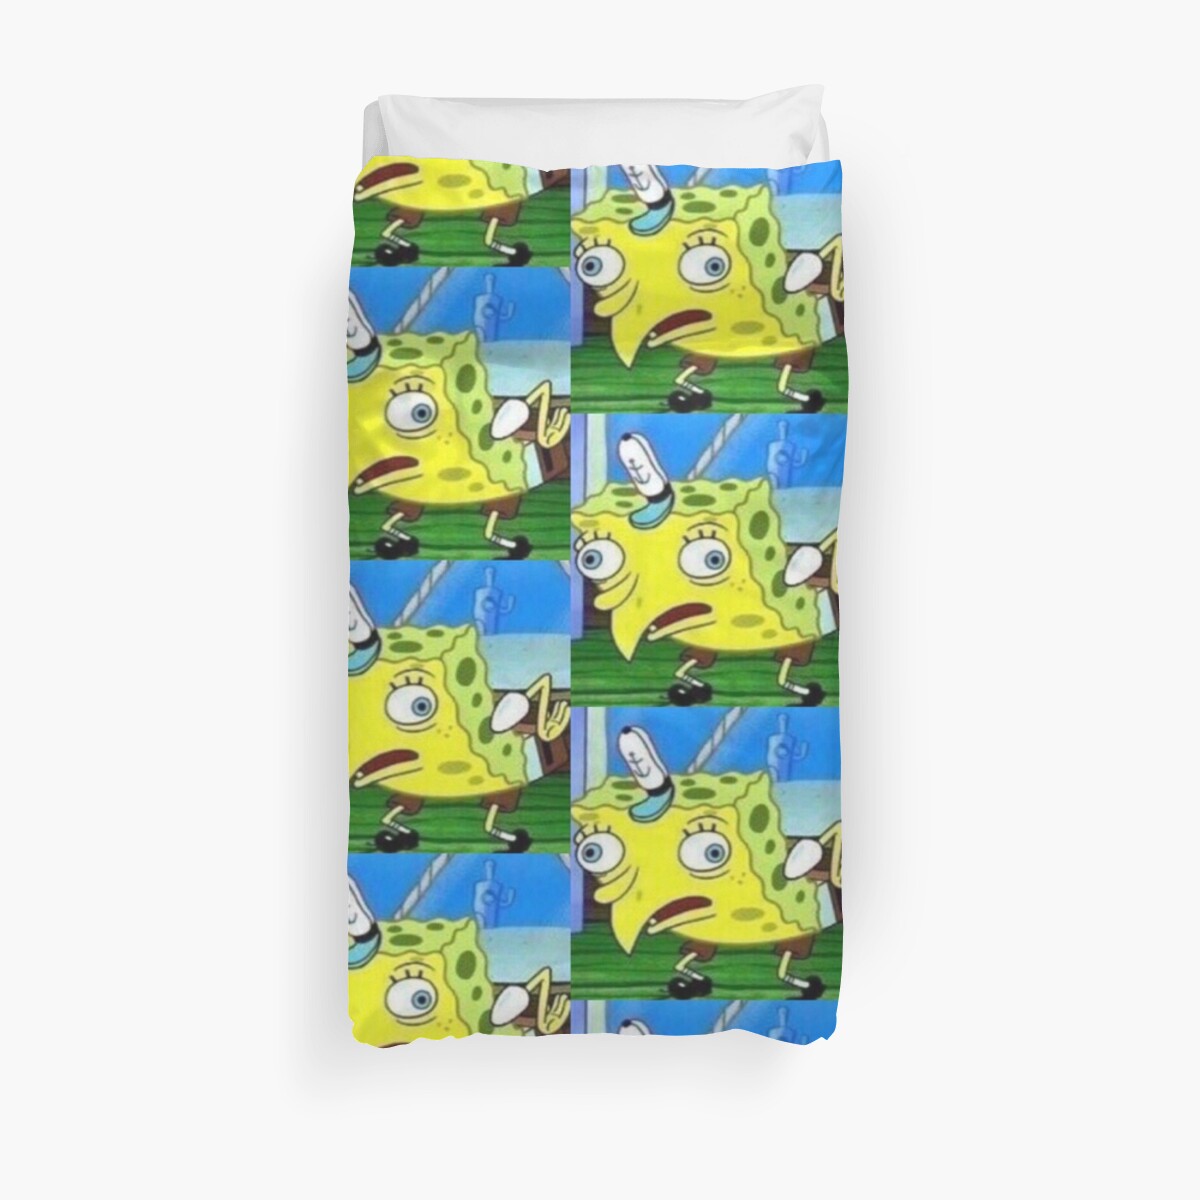 Mocking Spongebob Meme Duvet Covers By Memekween Redbubble